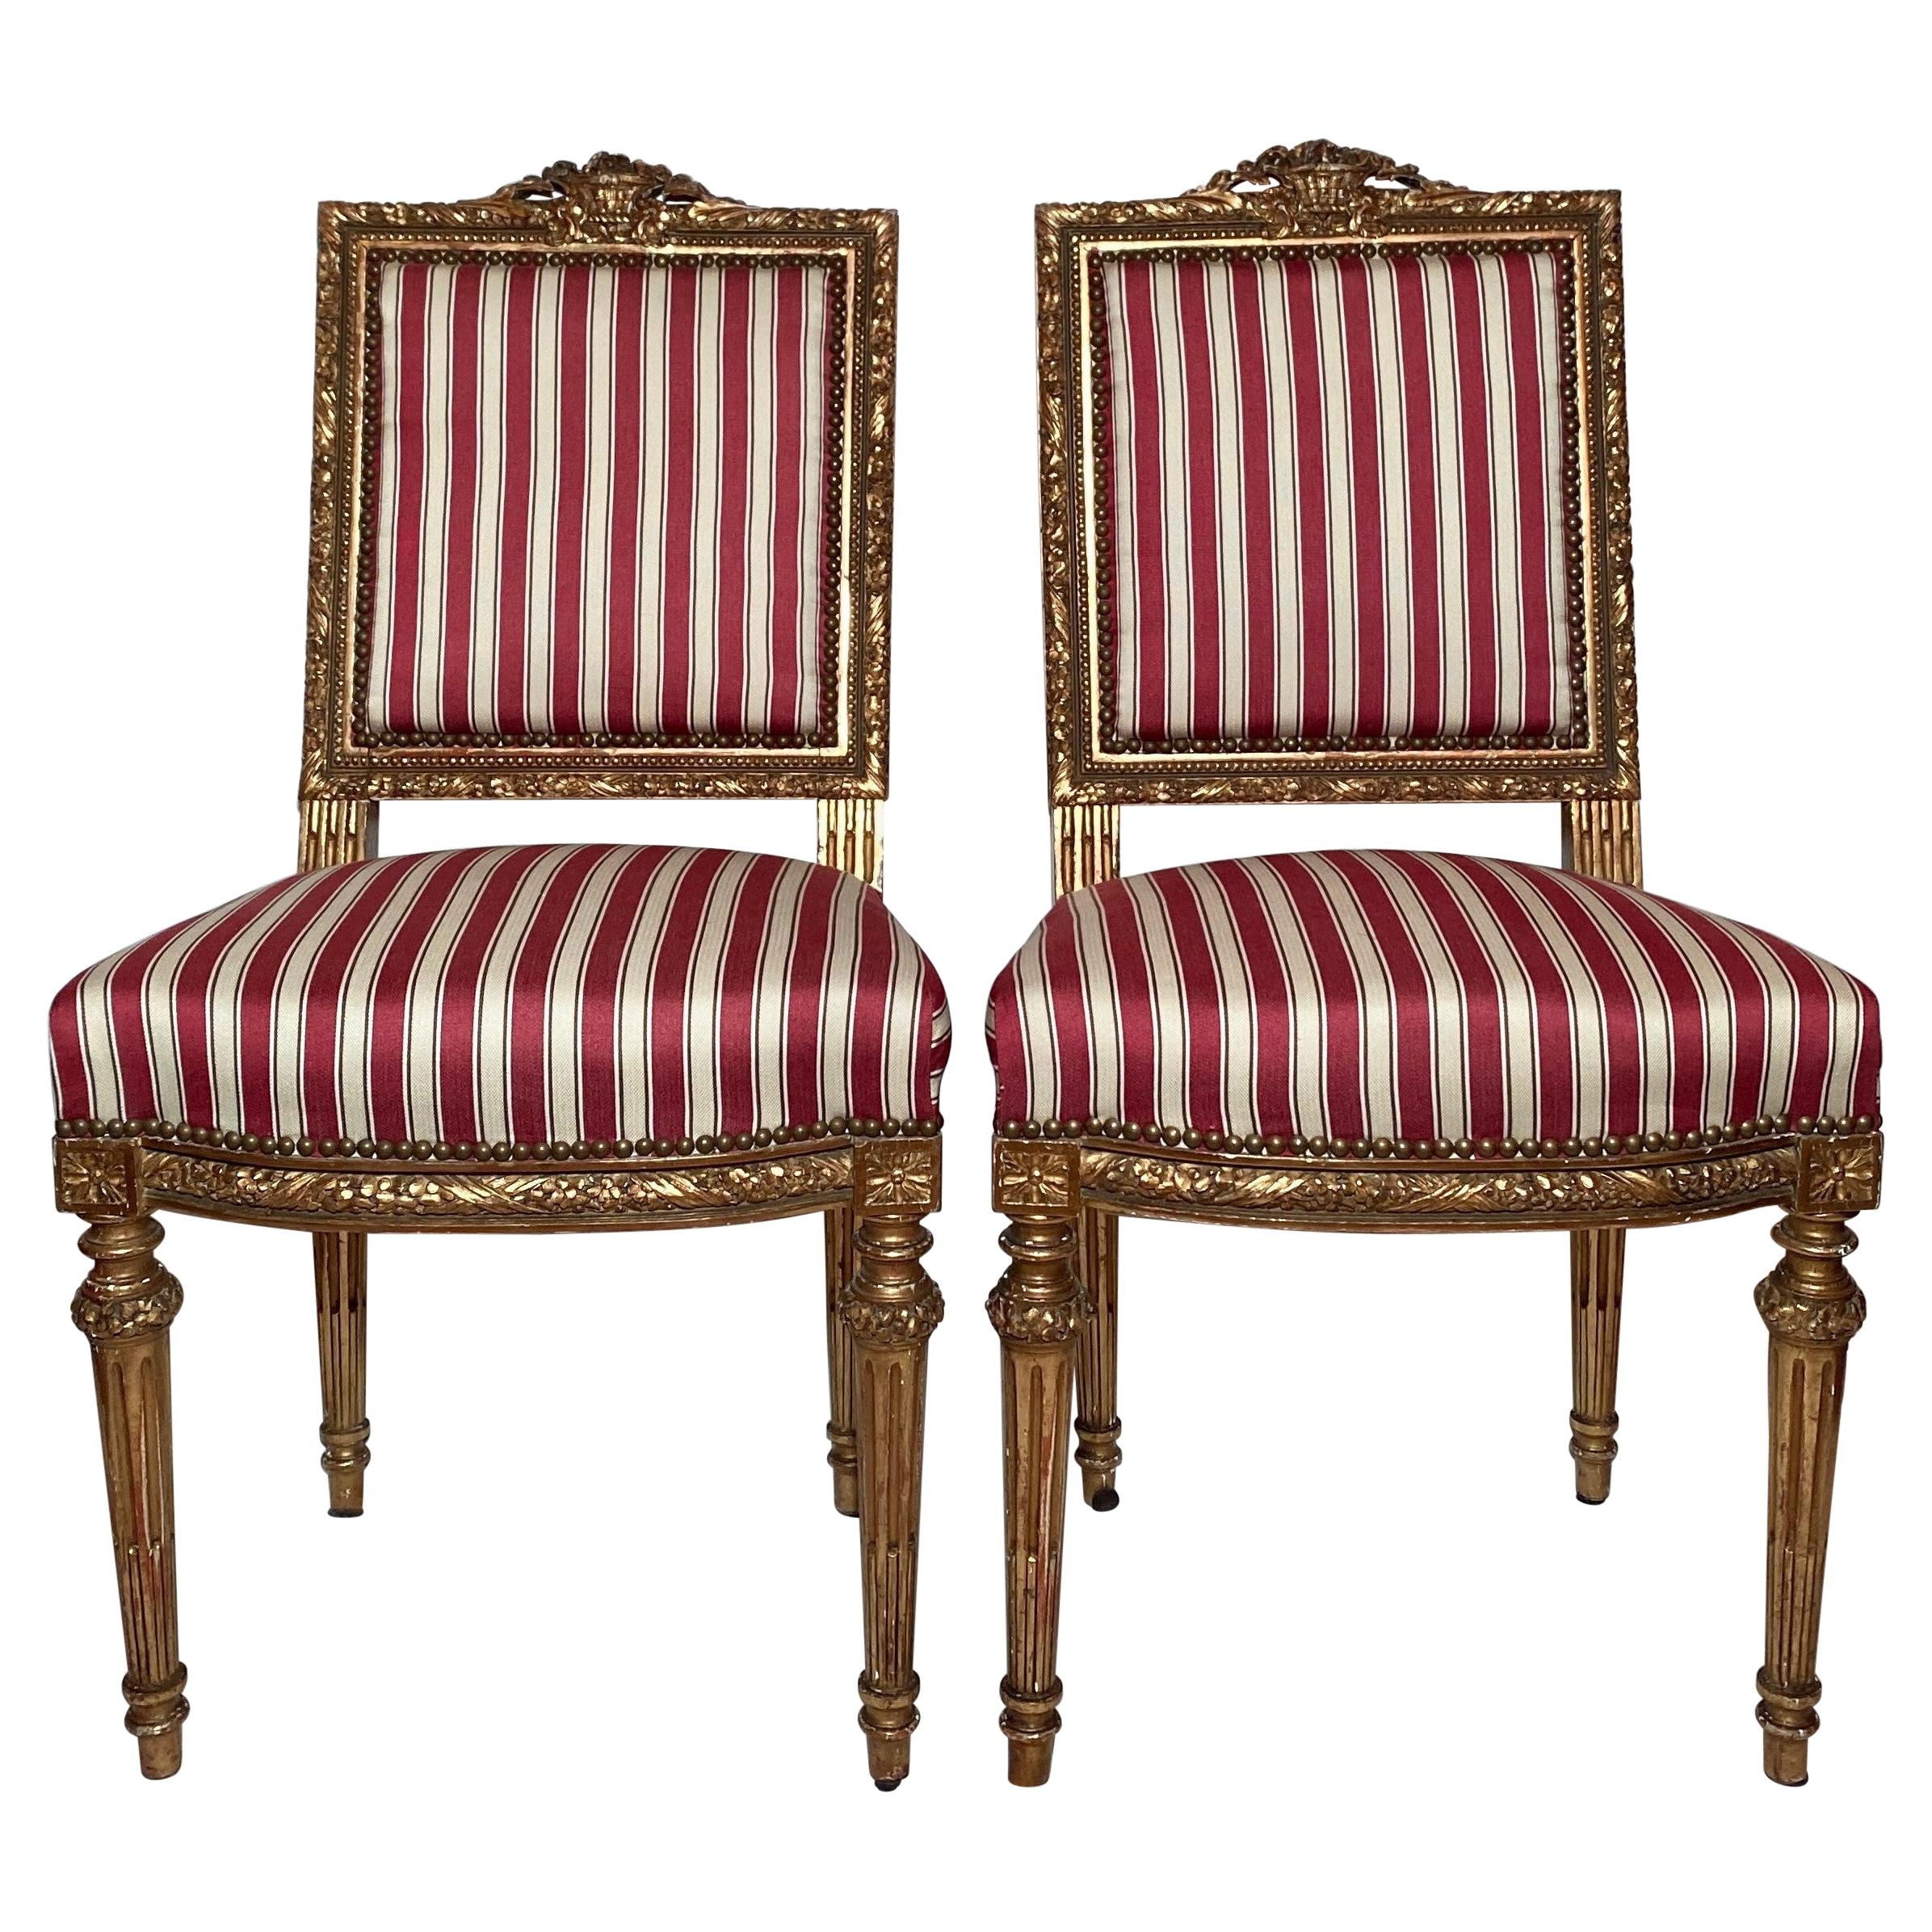 Paar antike französische Napoleon III.-Beistellstühle aus dem 19. Jahrhundert, geschnitztes Holz mit Gold